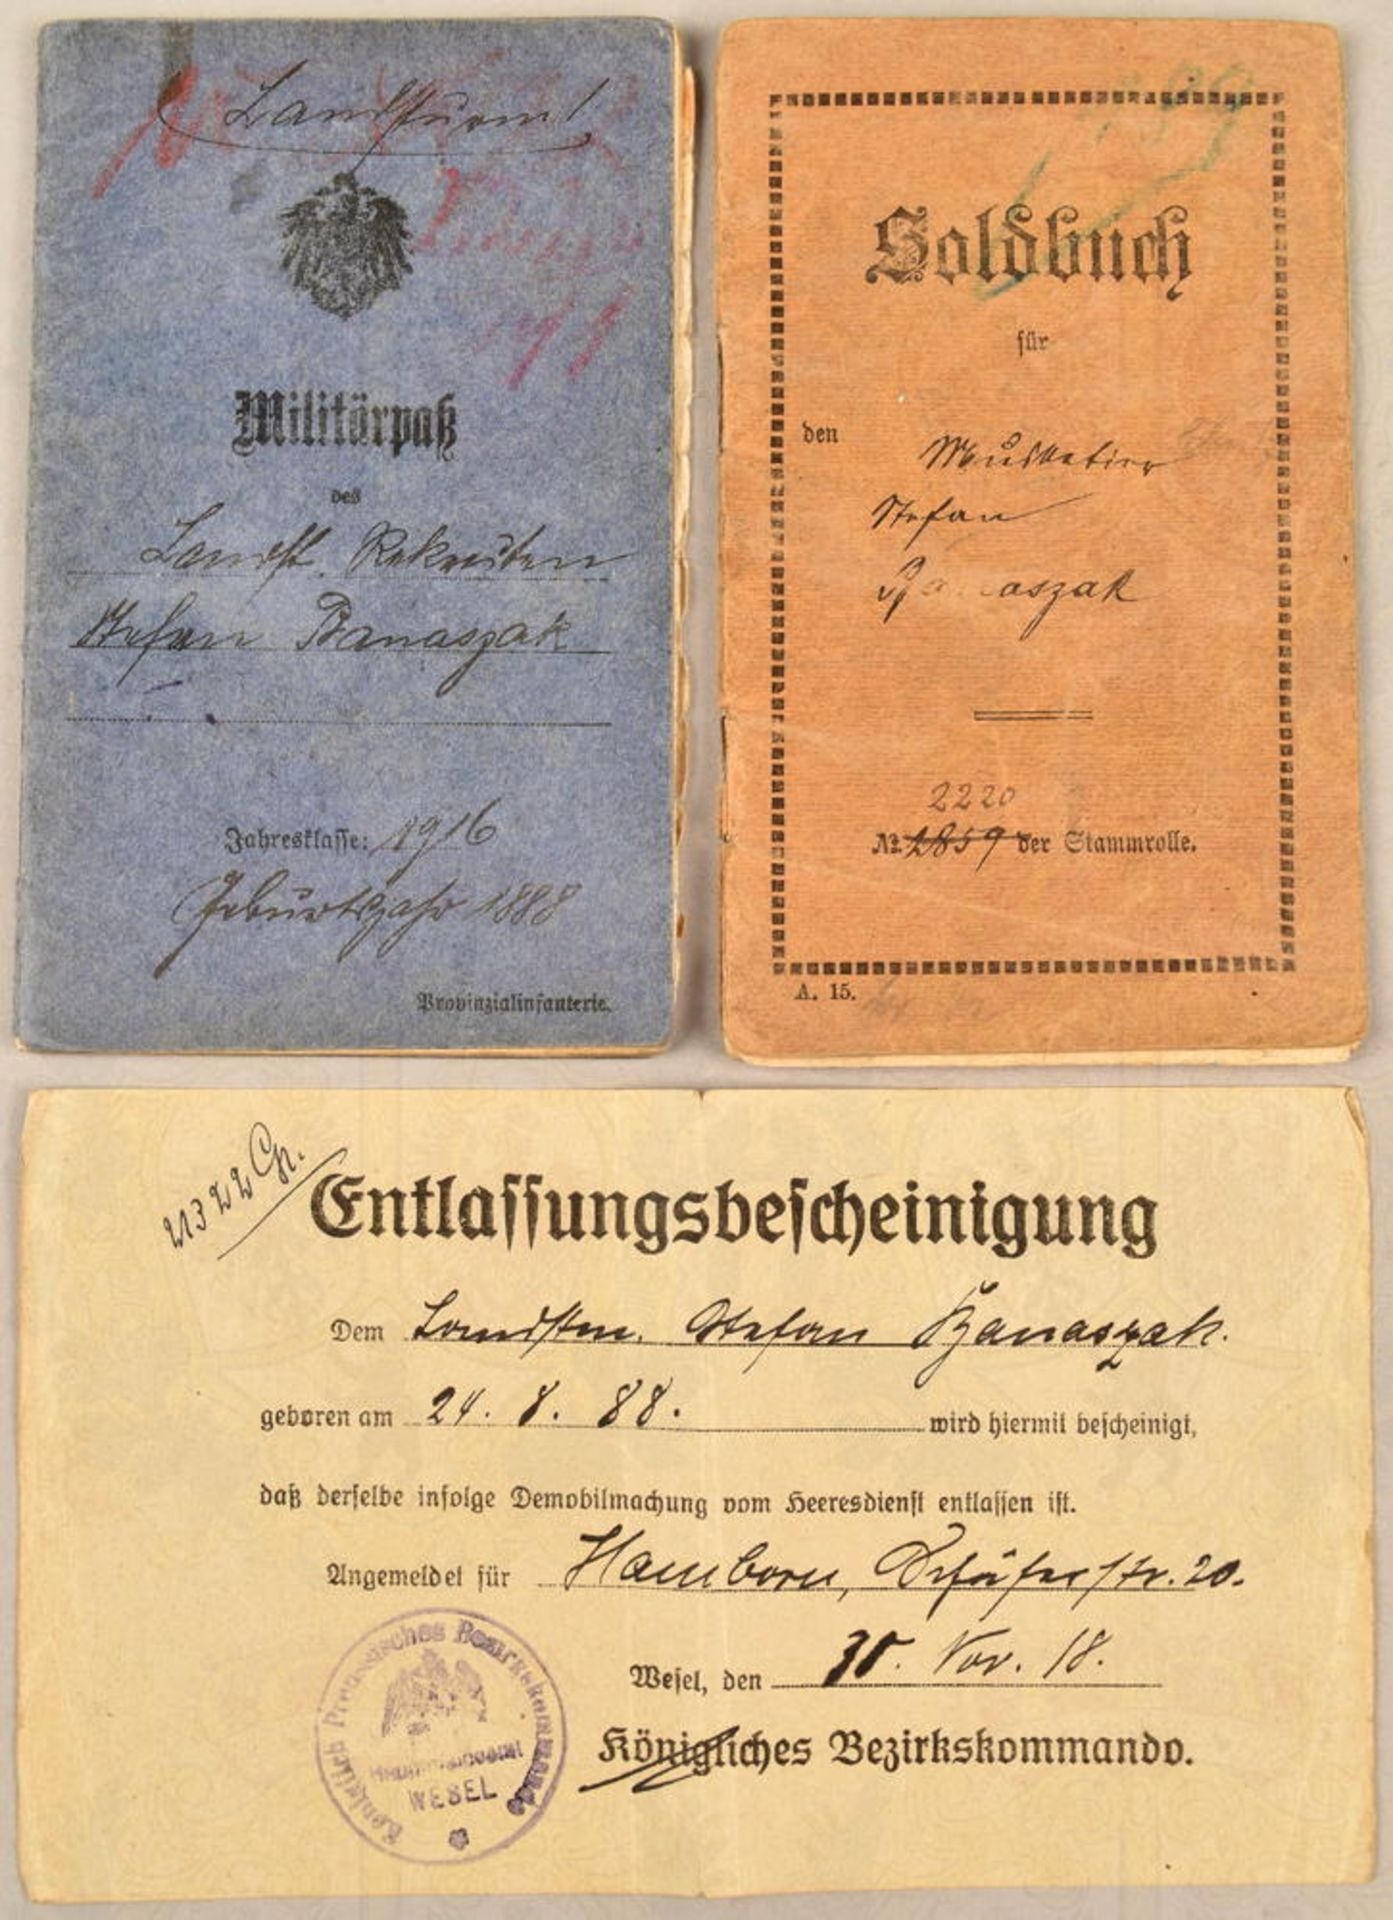 MILITÄRPASS UND SOLDBUCH MG-SCHÜTZE 1916-1919